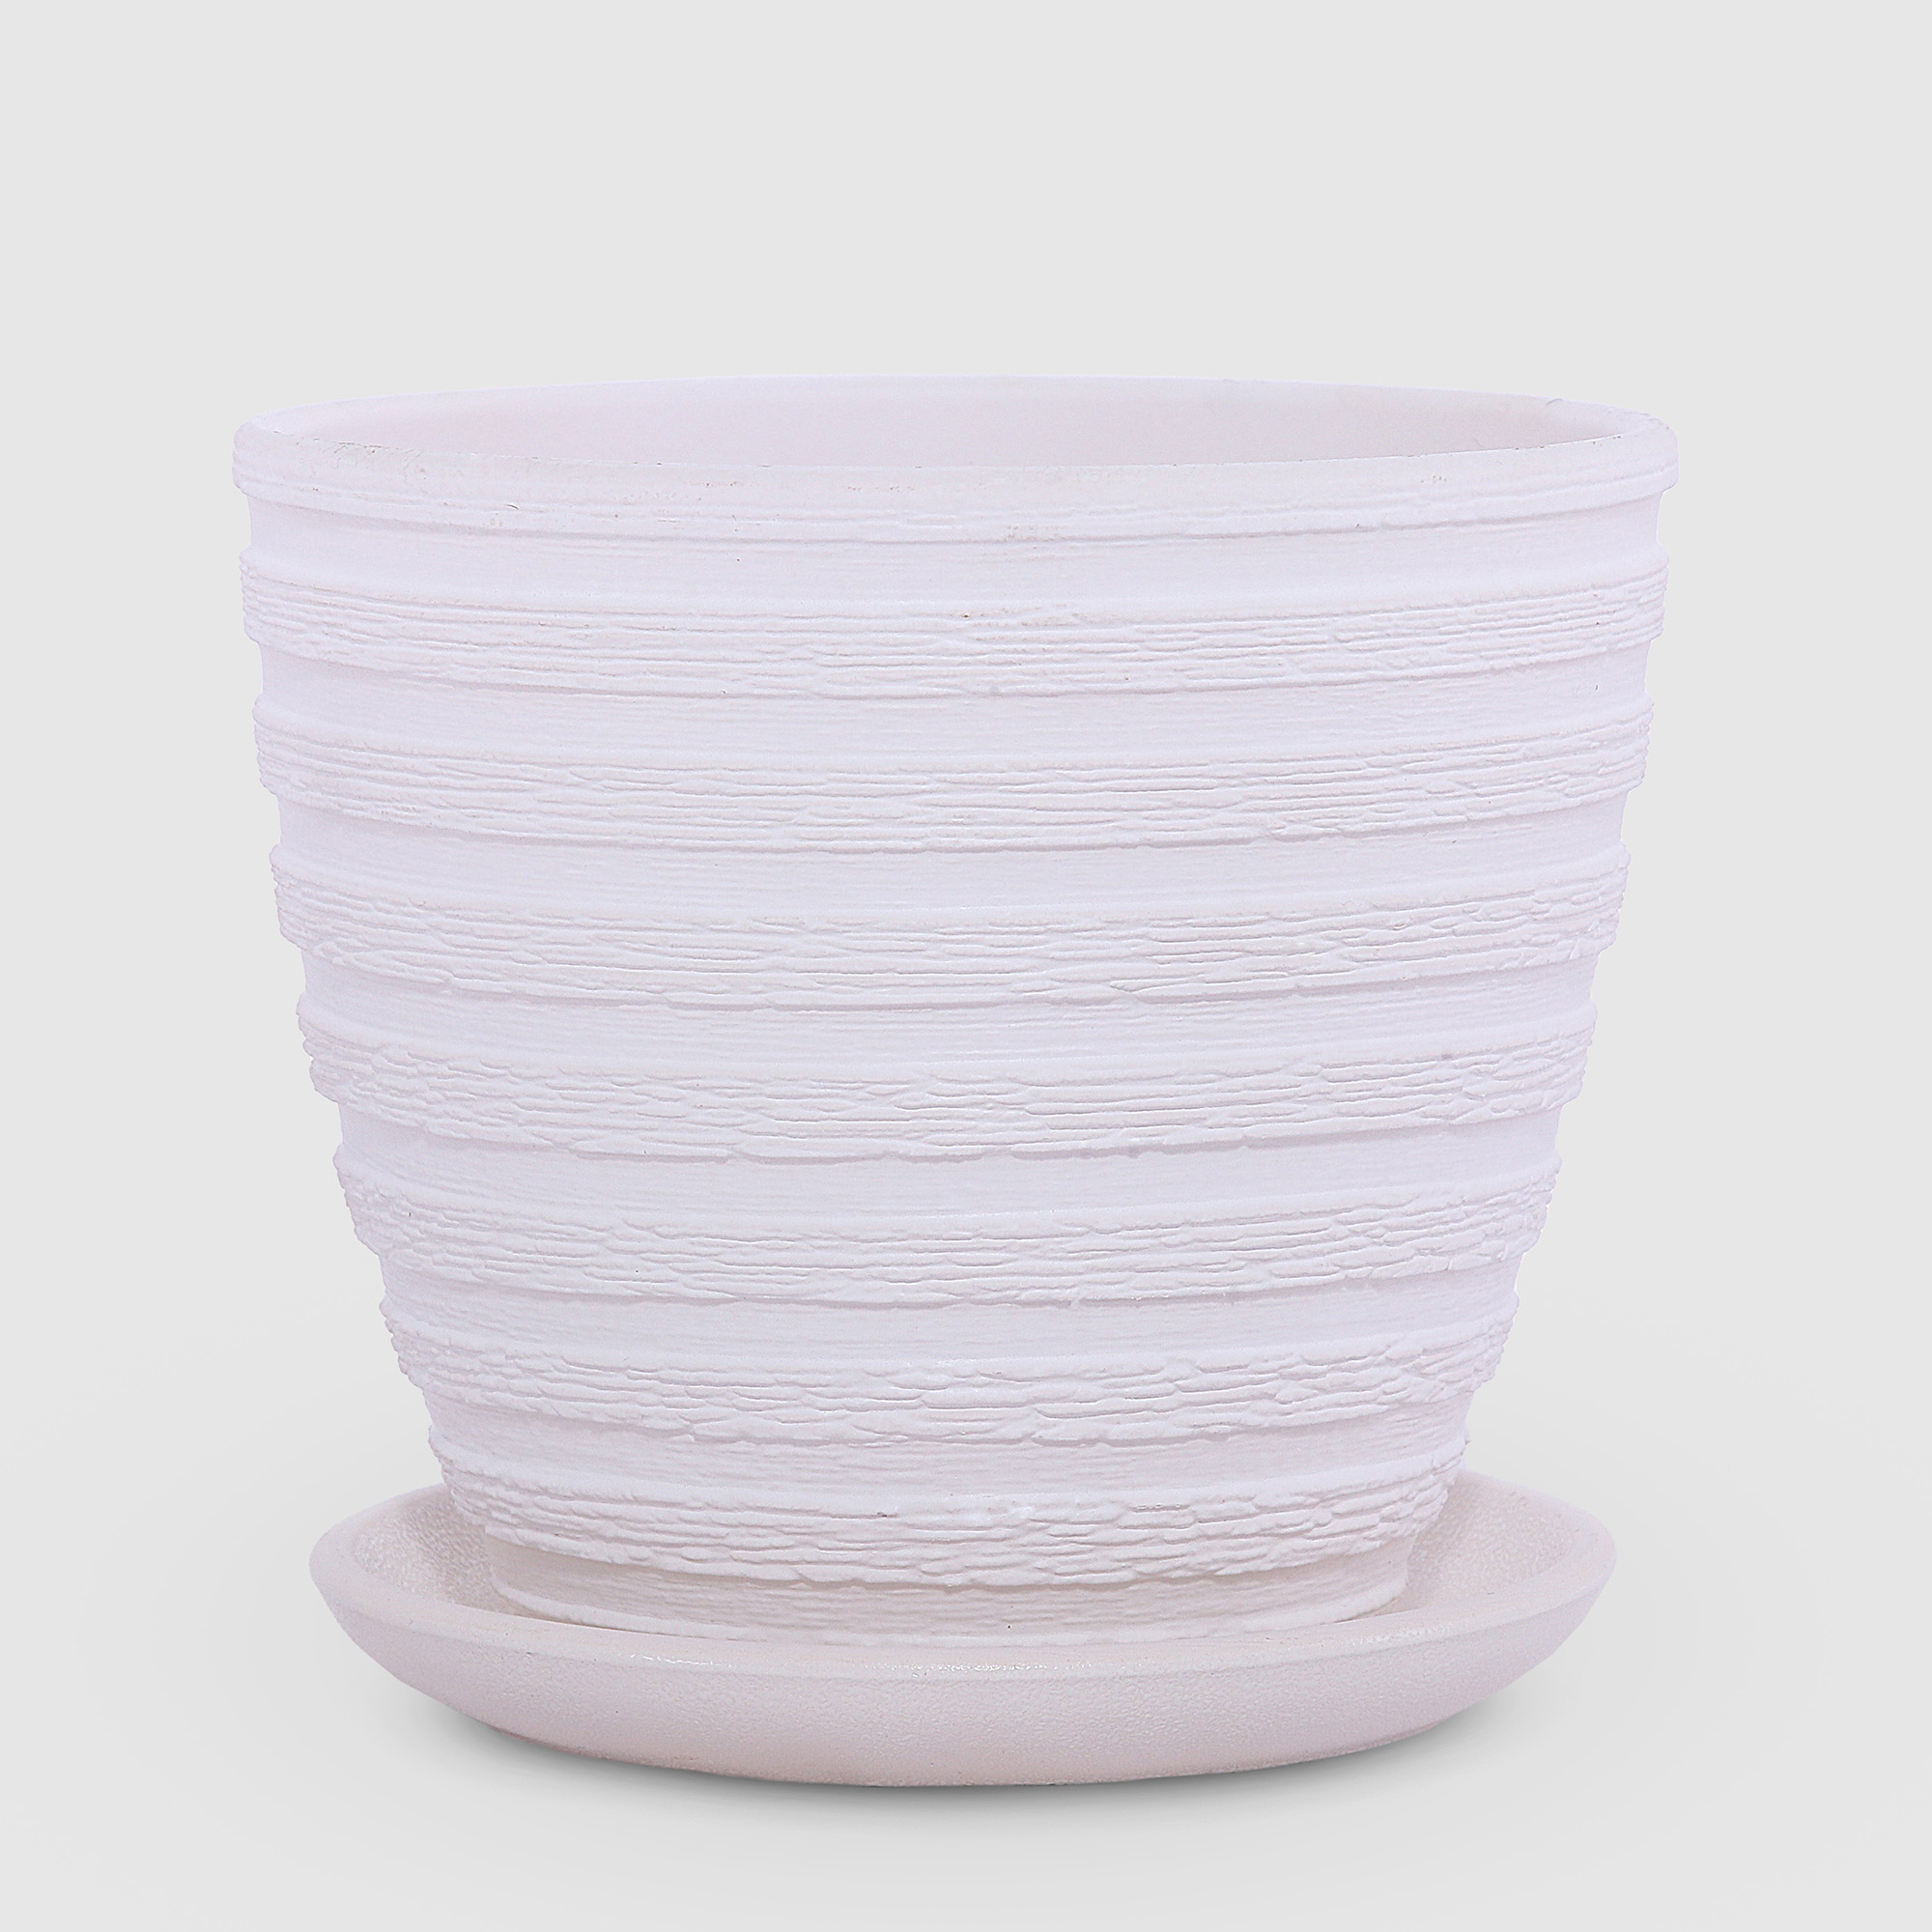 Керамический горшок с поддоном Композит Букле белый 12 см сушилка для посуды с поддоном 38×24×37 см белый